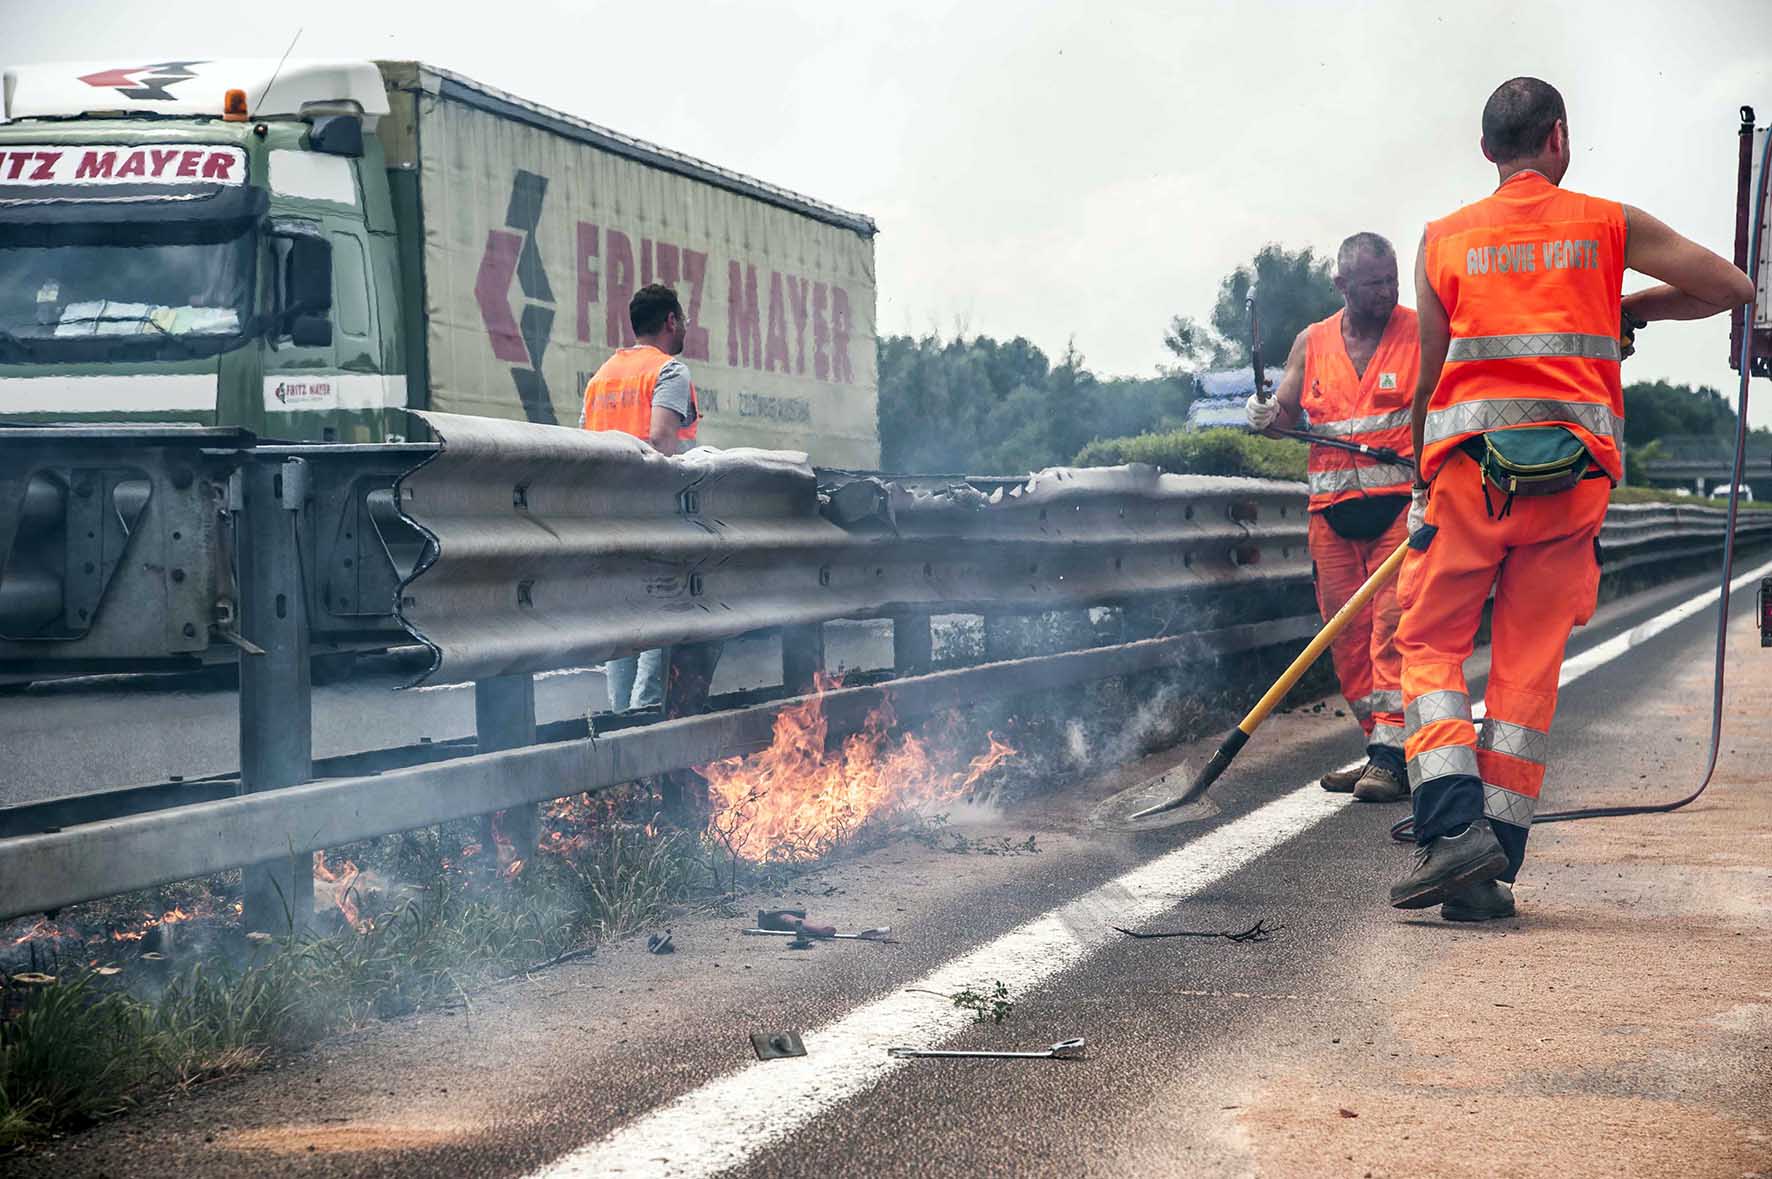 A4 Palmanova Incidente sever 8 luglio 2015 incendio guardrail distrutto